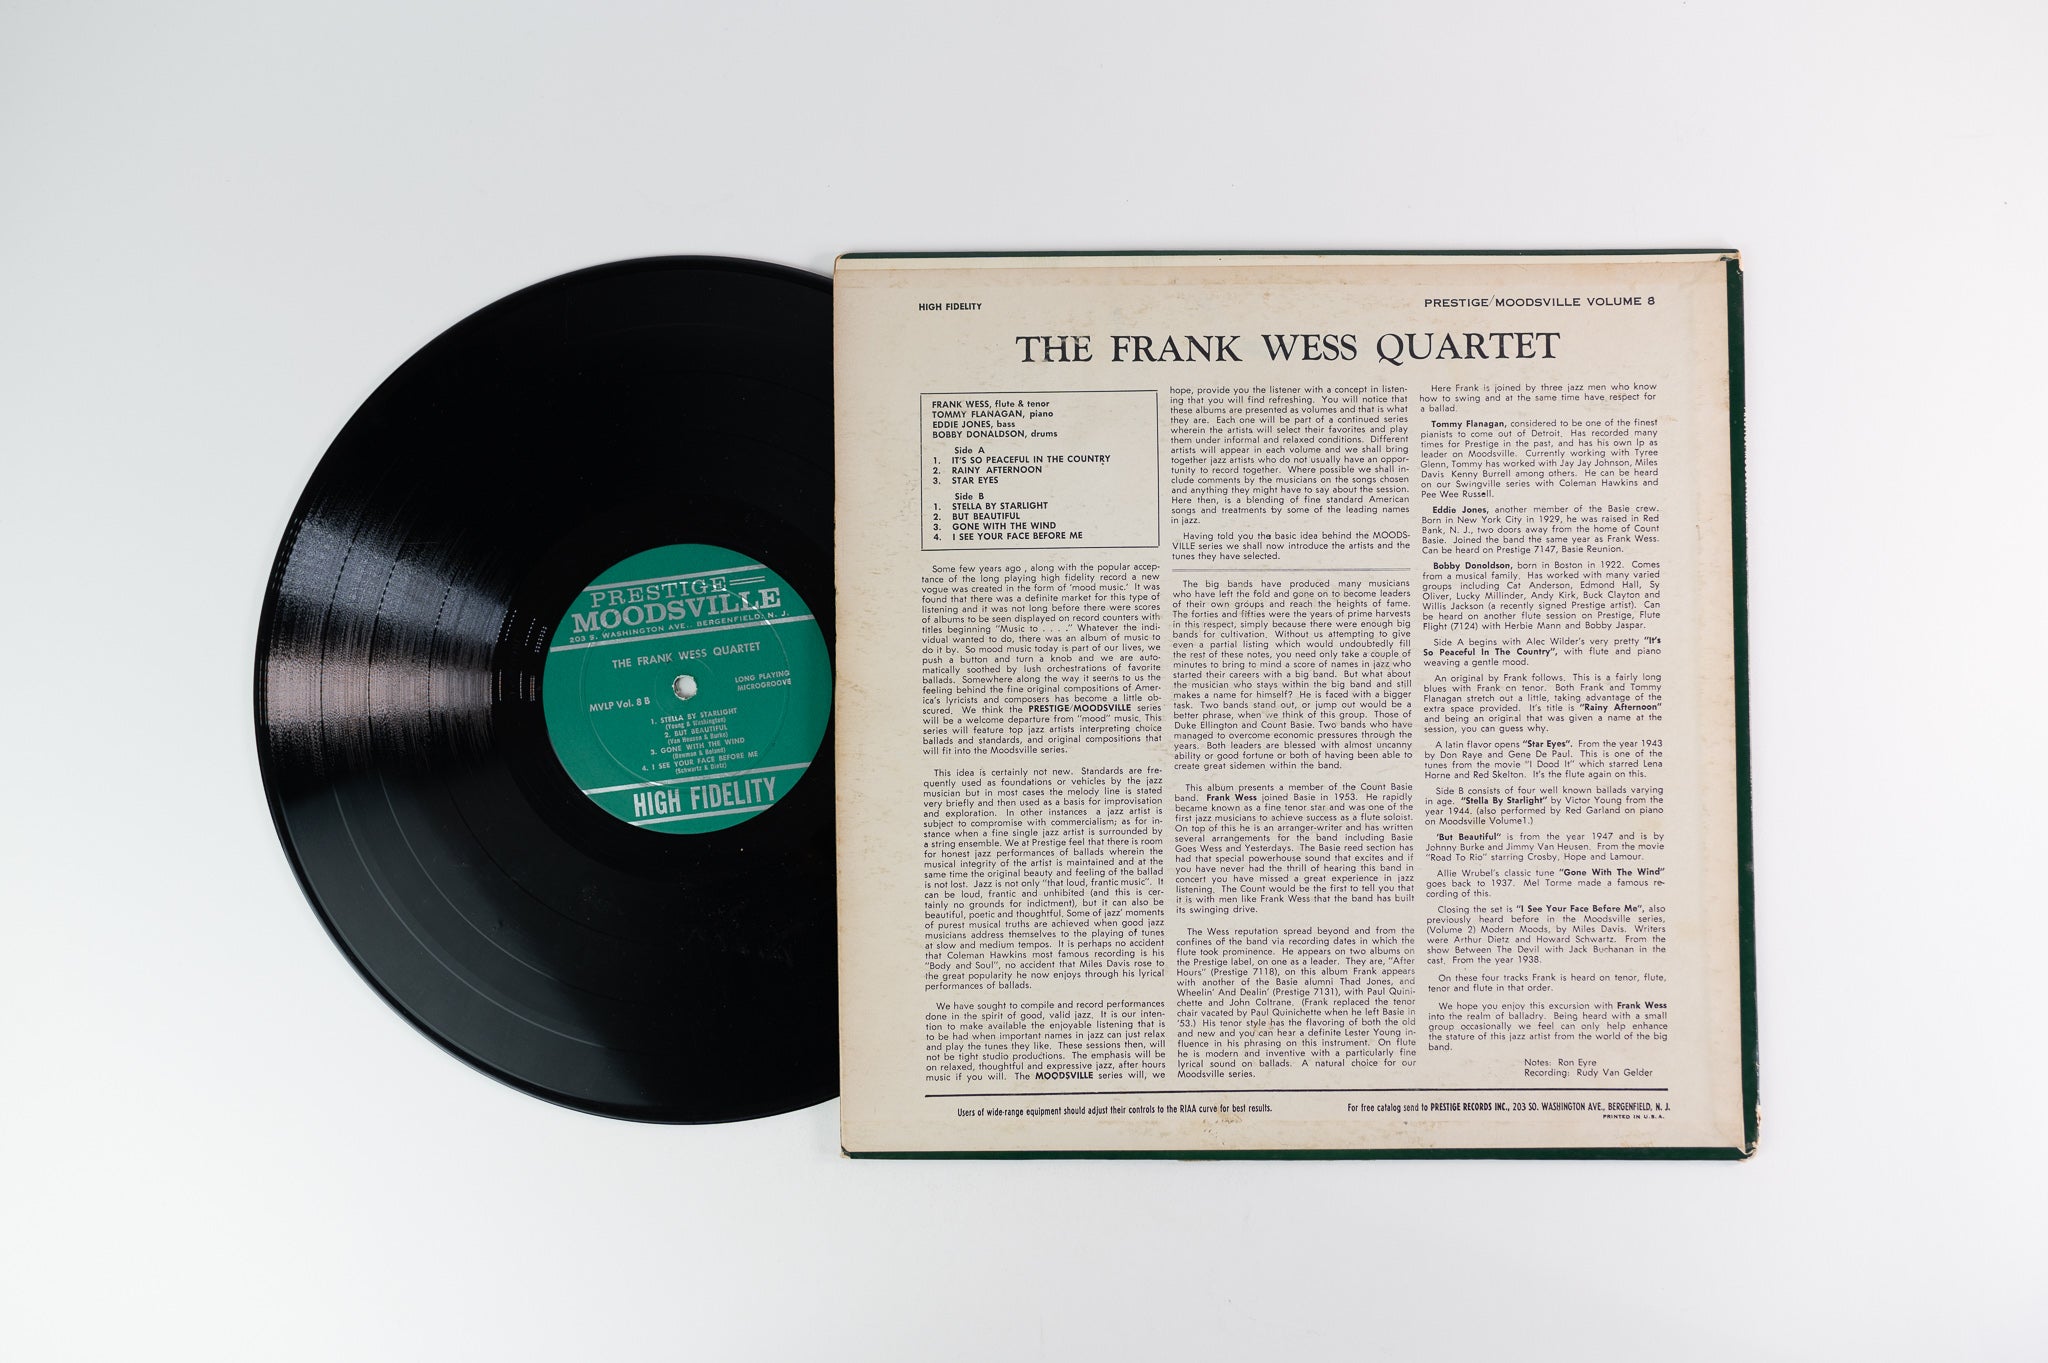 The Frank Wess Quartet - The Frank Wess Quartet on Moodsville